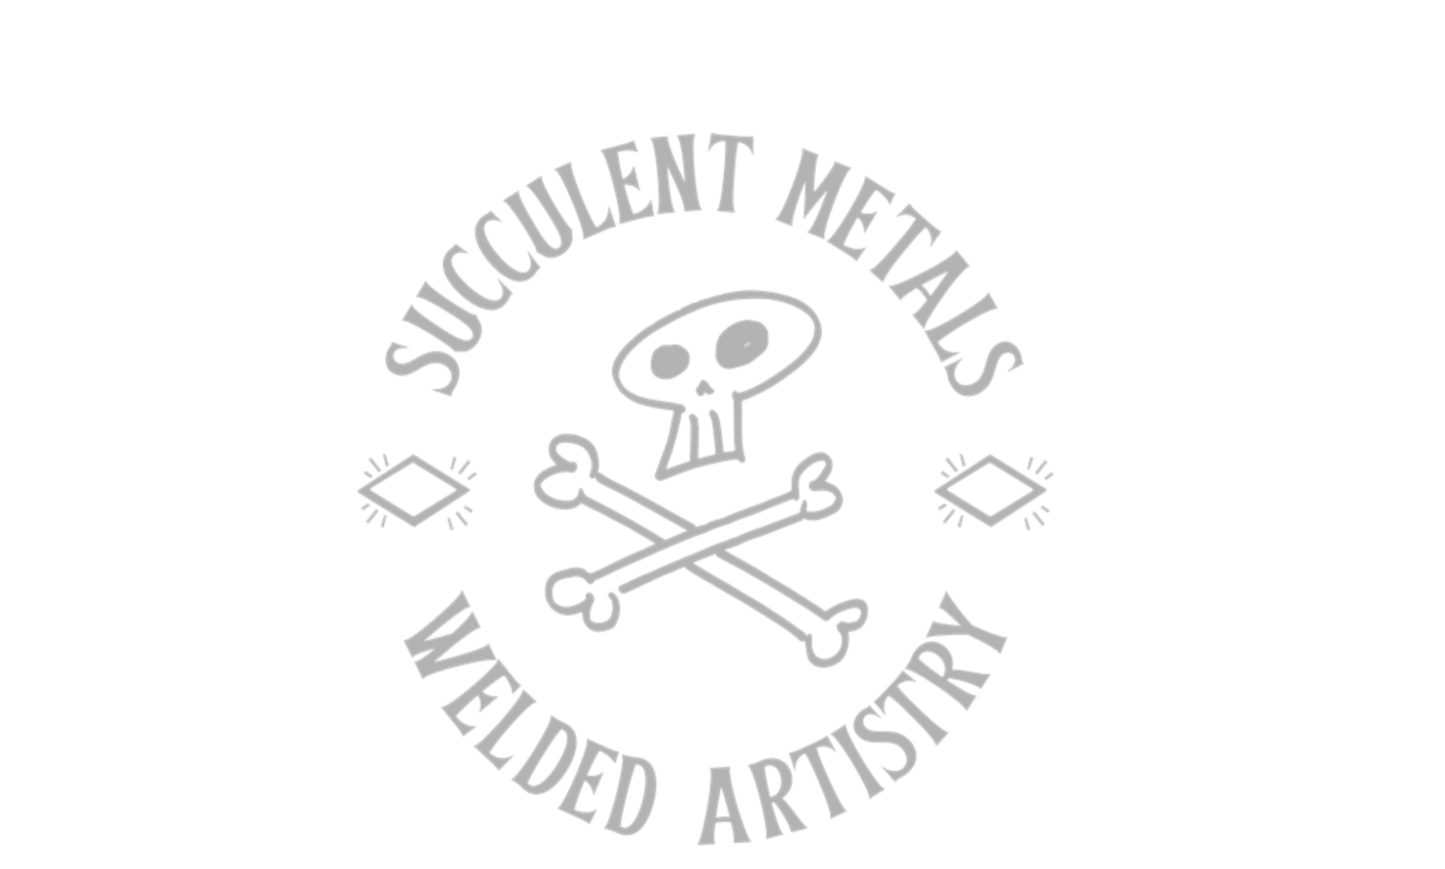 Succulent Metals Welded Artistry Logo - Handmade Artisan Metalwork